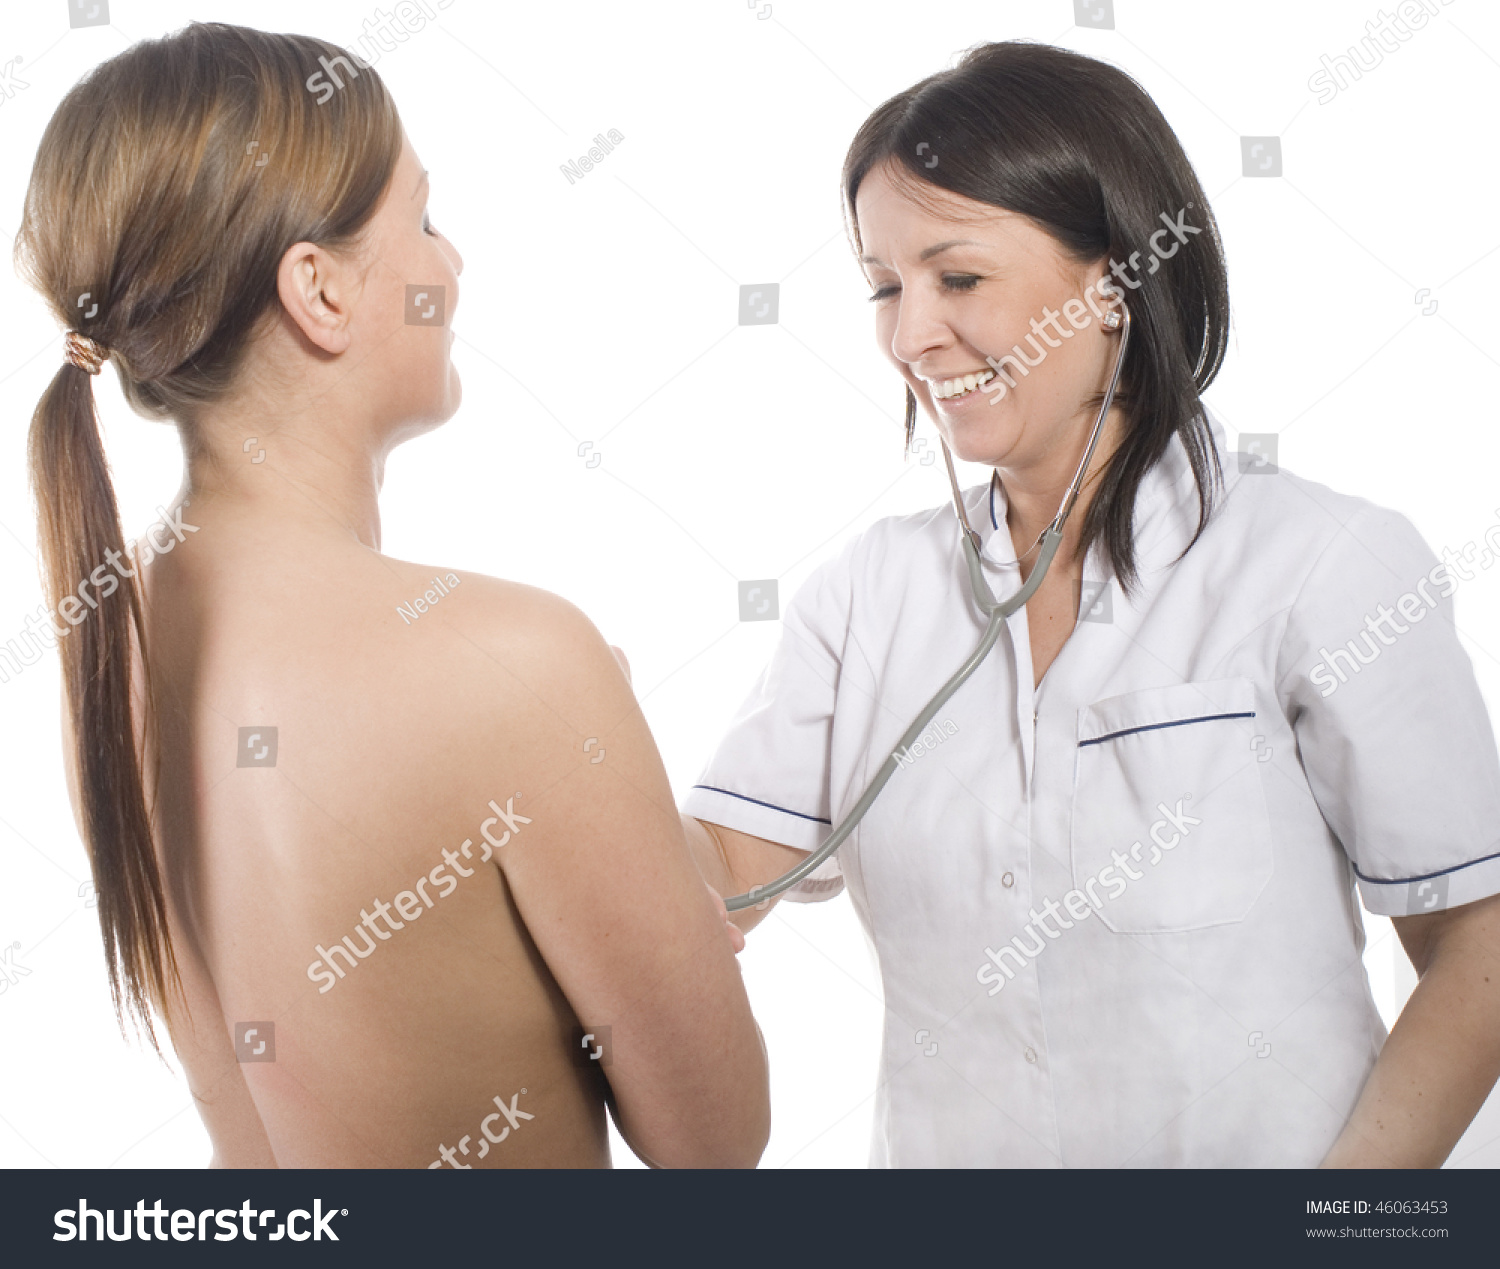 какой врач проверяет грудь у женщин фото 9